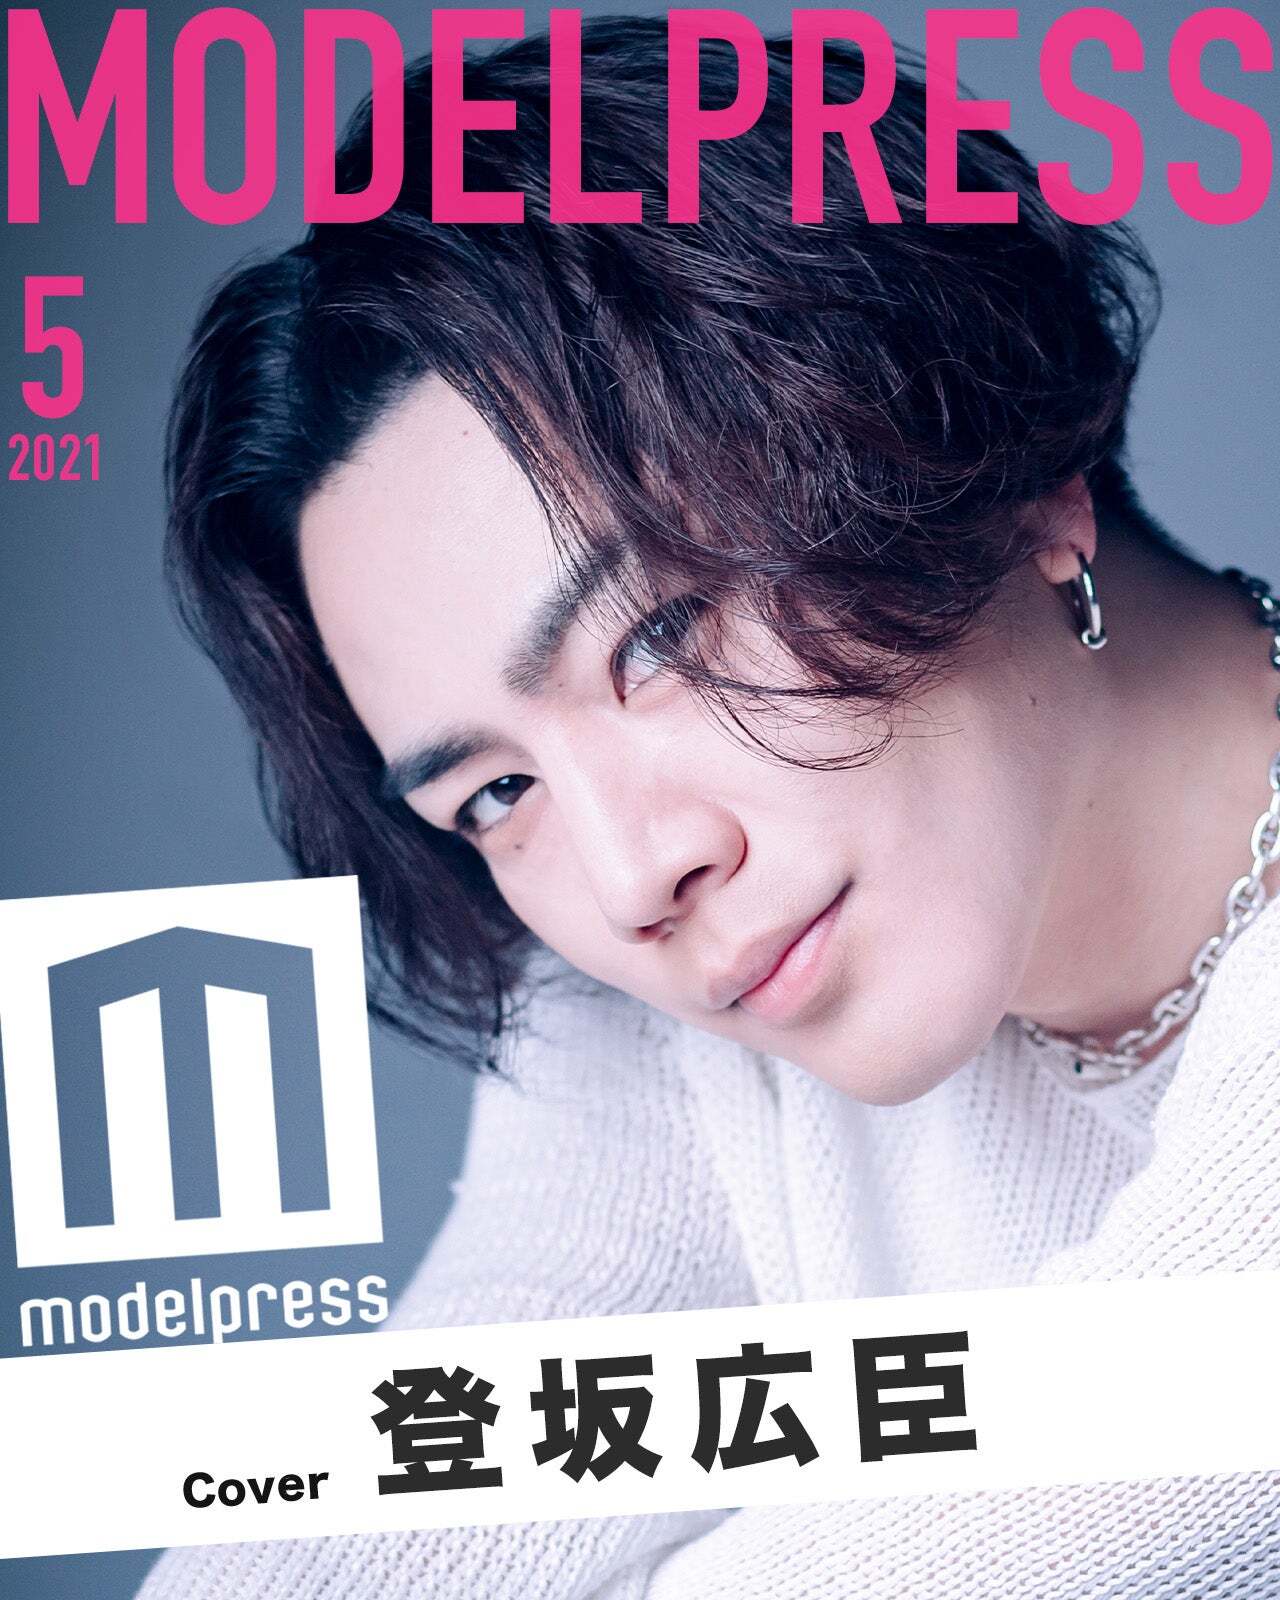 5月表紙は三代目jsb登坂広臣 モデルプレス新企画 今月のカバーモデル モデルプレス のプレスリリース